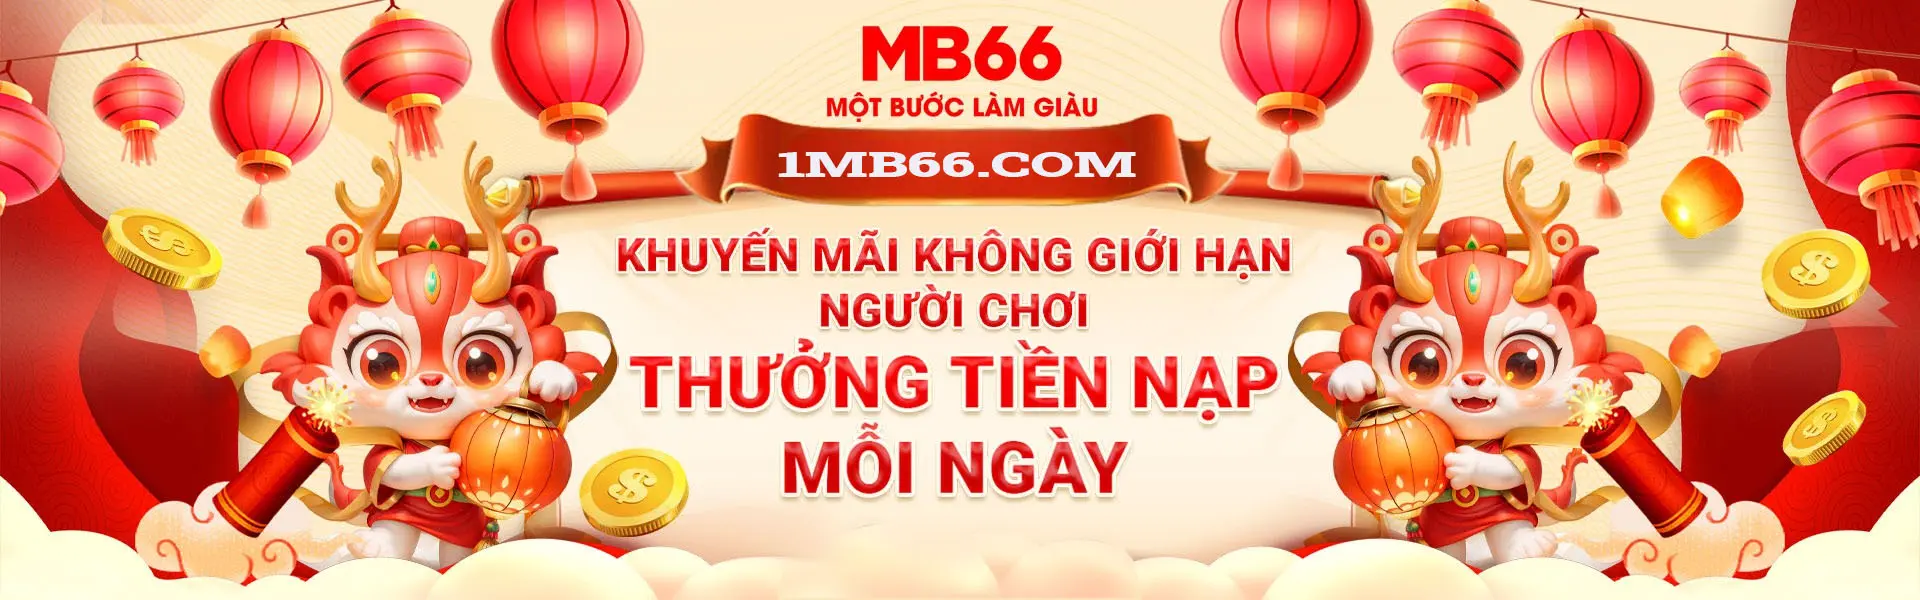 mb66-khuyen-mai-khong-gioi-han